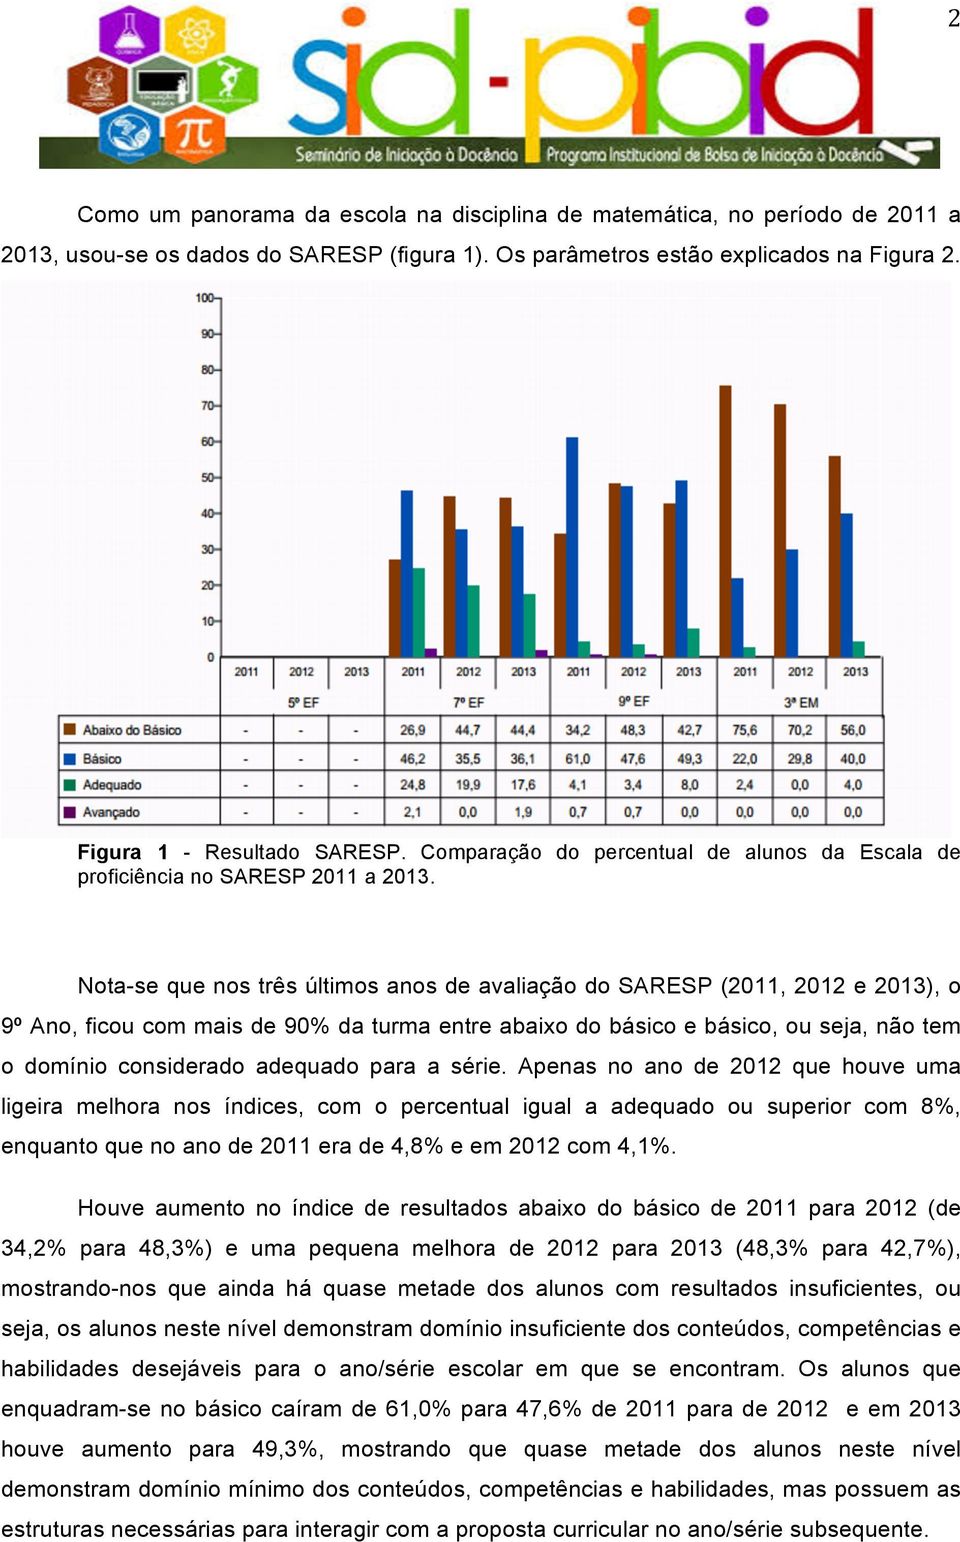 Nota-se que nos três últimos anos de avaliação do SARESP (2011, 2012 e 2013), o 9º Ano, ficou com mais de 90% da turma entre abaixo do básico e básico, ou seja, não tem o domínio considerado adequado